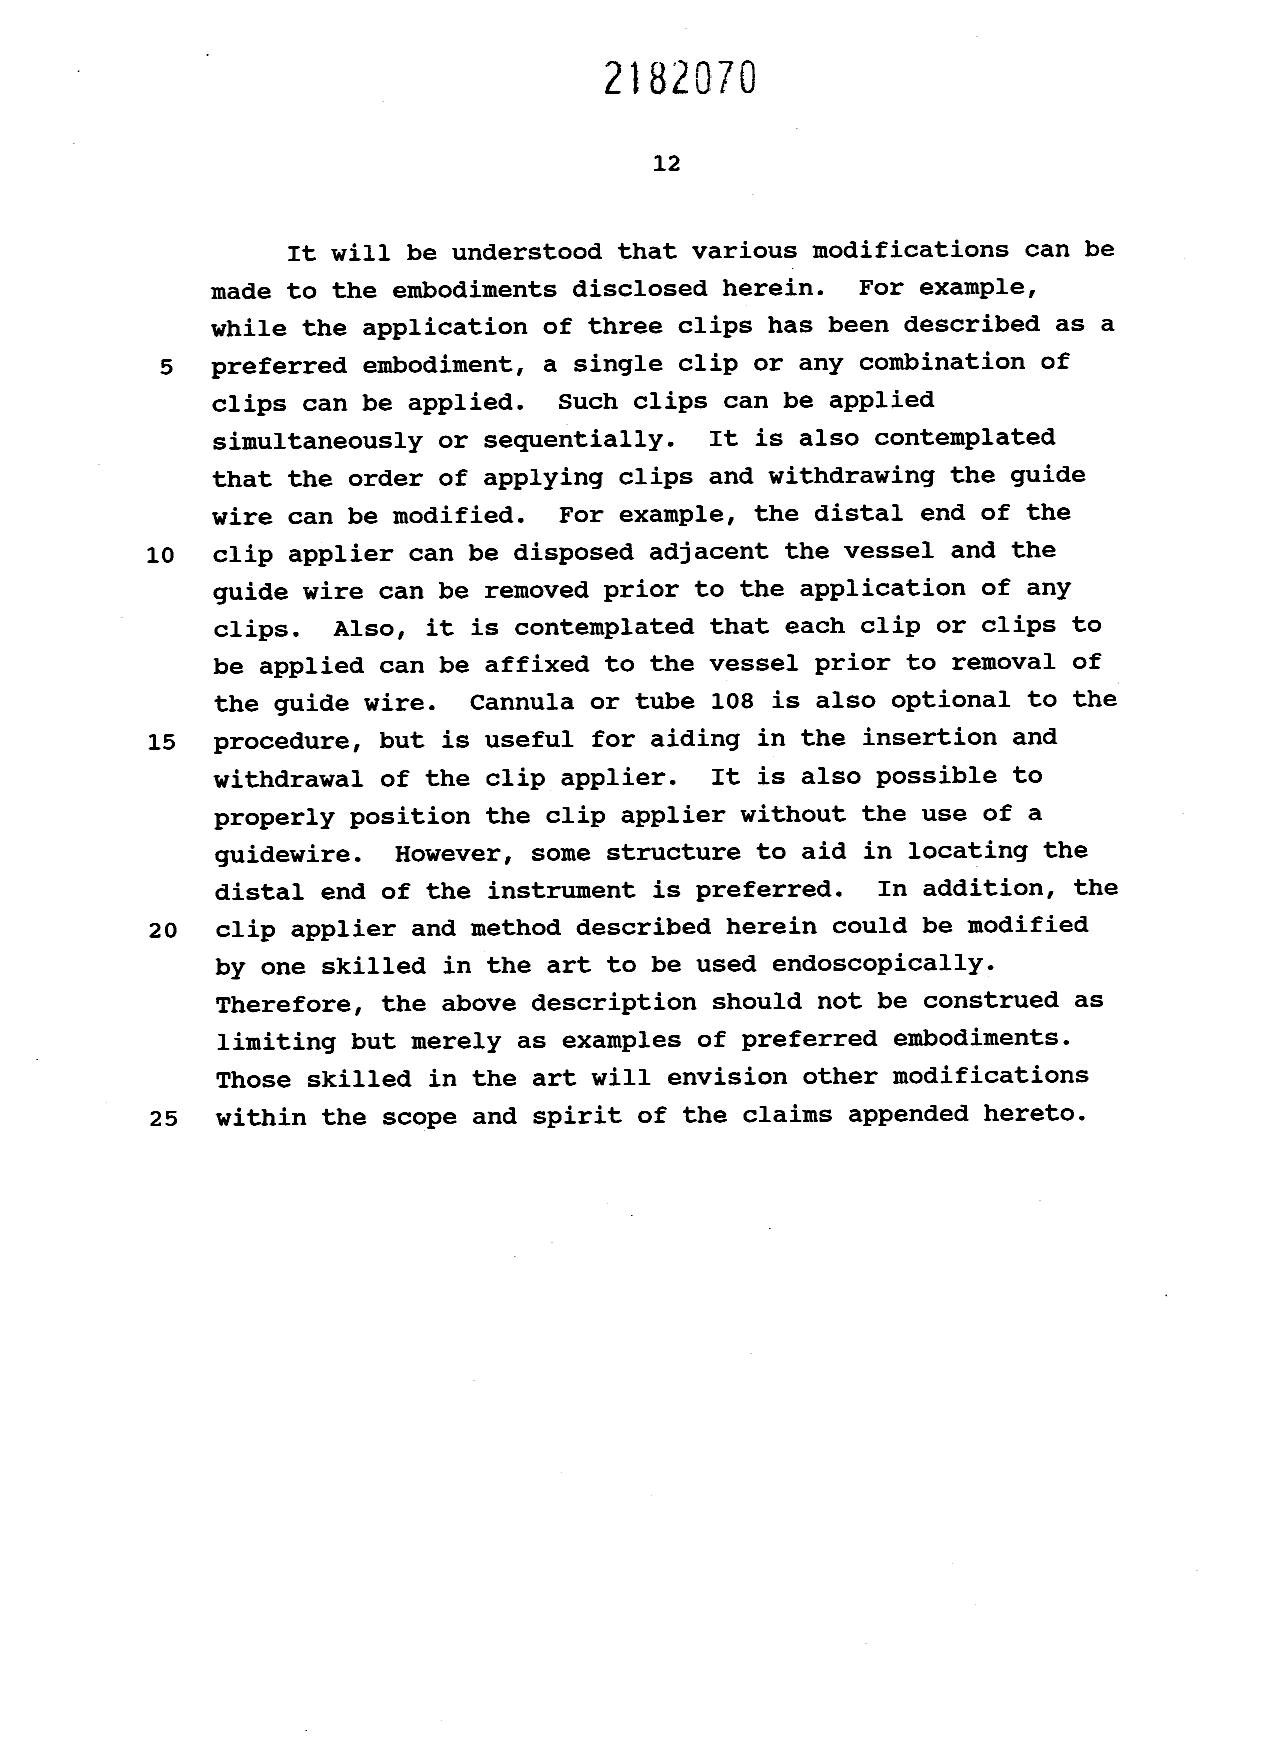 Canadian Patent Document 2182070. Description 19951225. Image 12 of 12